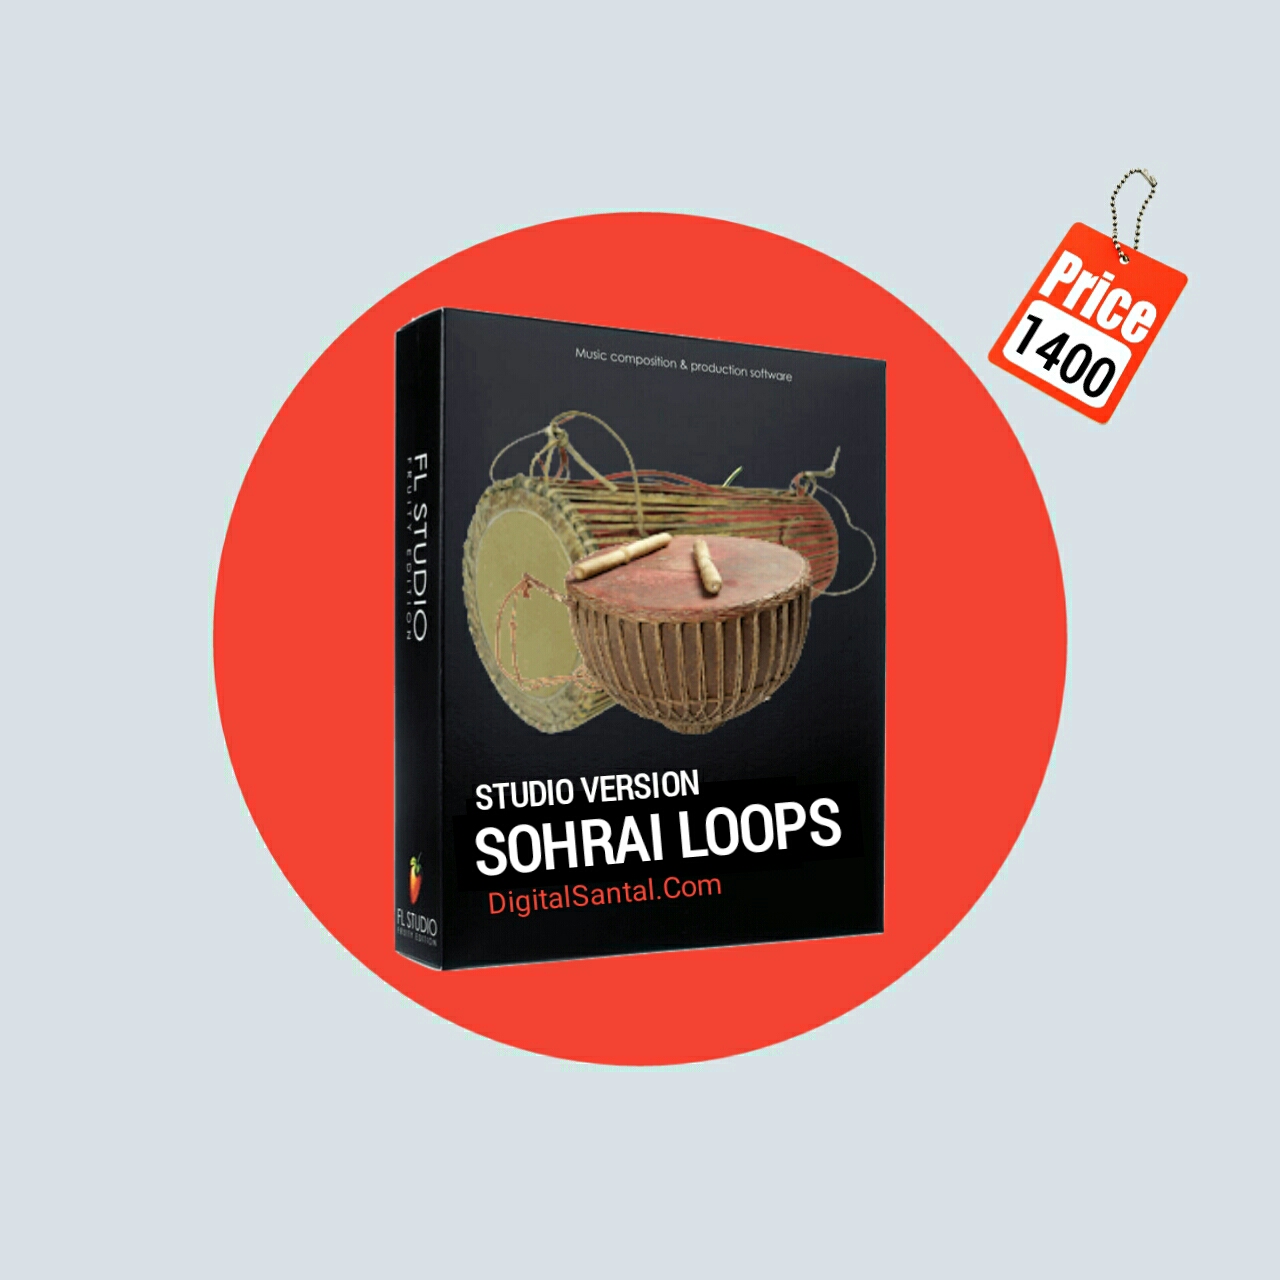 Santali sohrai loops pack download,
Santali sohrai loops pack,
Santali sohrai loops download mp3,
Santali sohrai loops download,

